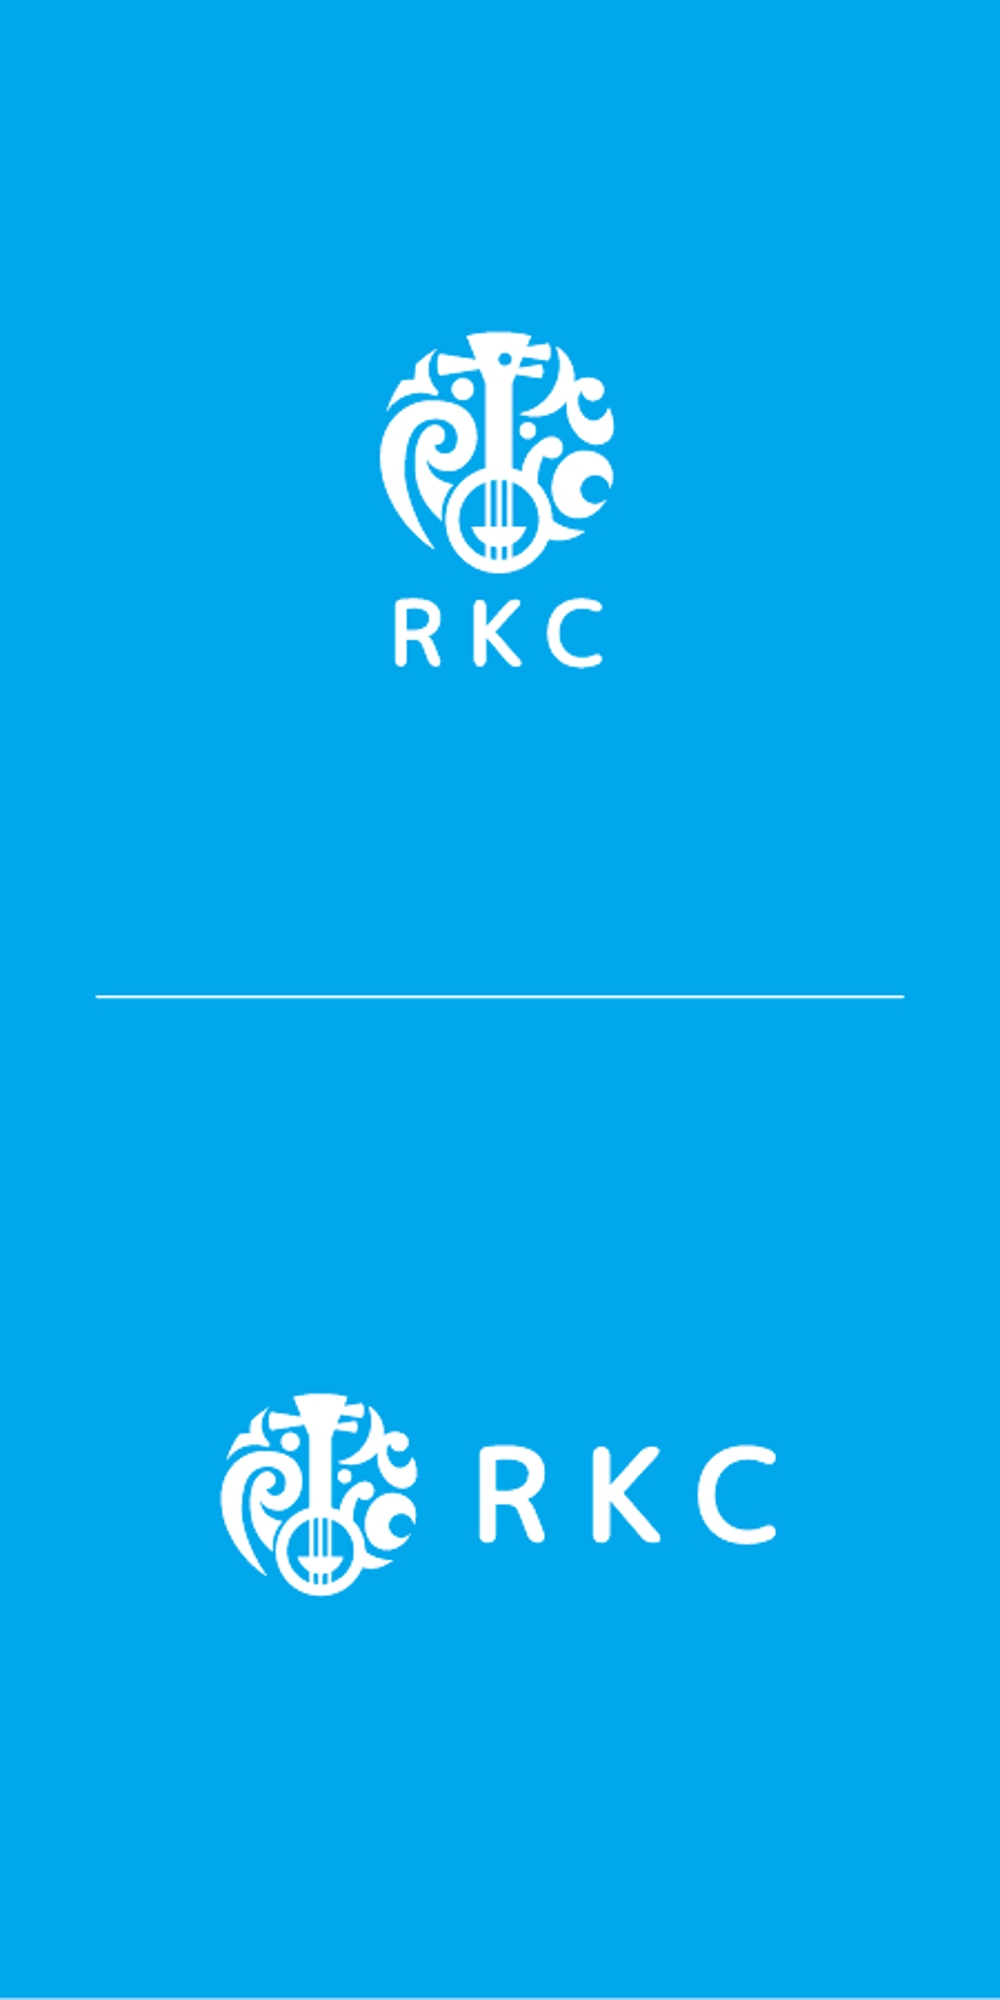 沖縄で始まる介護コミュニティ協会「RKC」のロゴ制作依頼